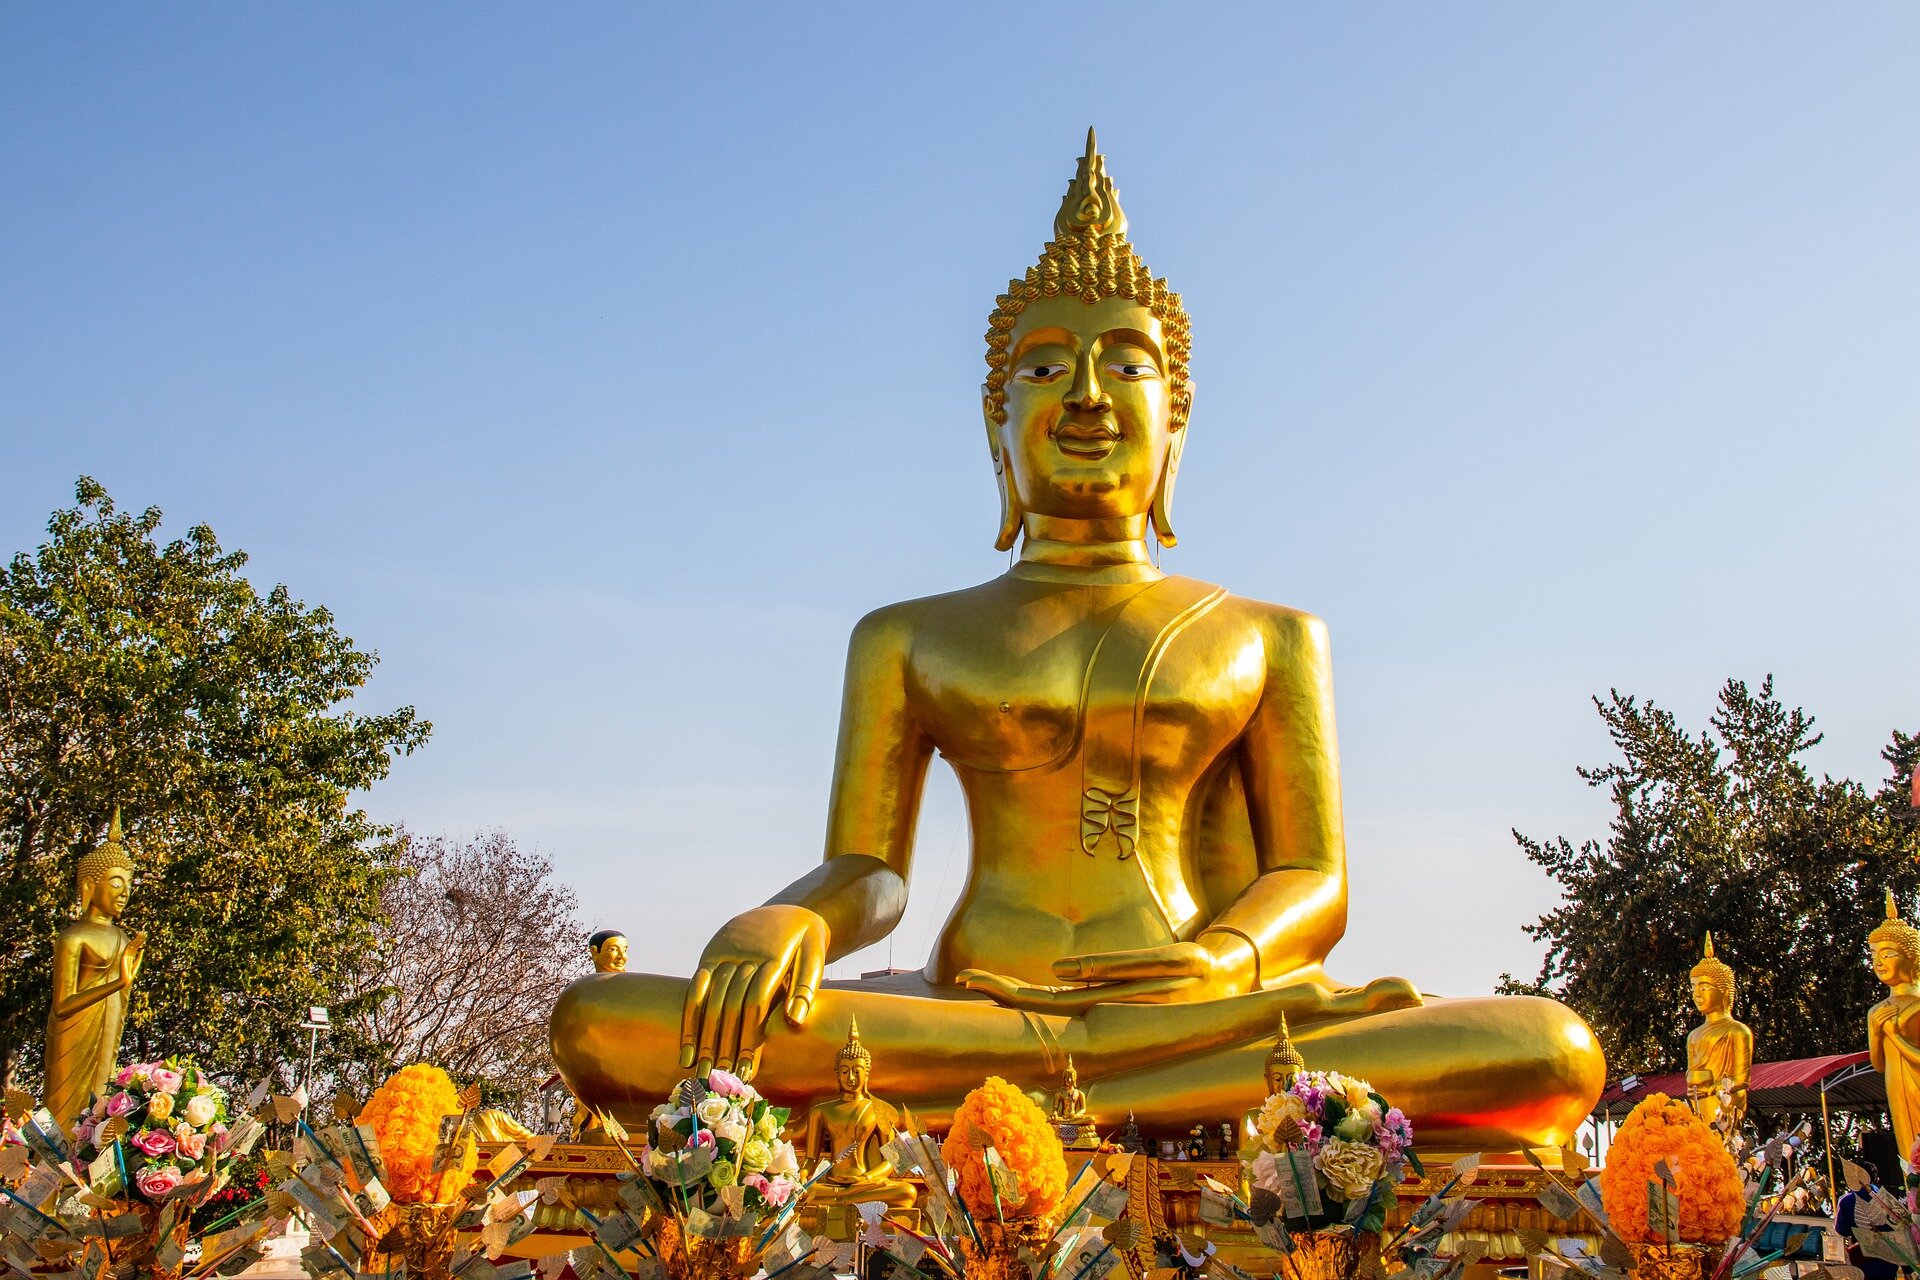 Zdjęcie przedstawia złoty, duży posąg Buddy. Budda siedzi w pozycji kwiatu lotosu, ma wysoko upięte włosy. Prawą dłoń opiera na prawym kolanie, lewą trzyma otwartą ku górze. Posąg jest złoty, znajduje się w plenerze. 